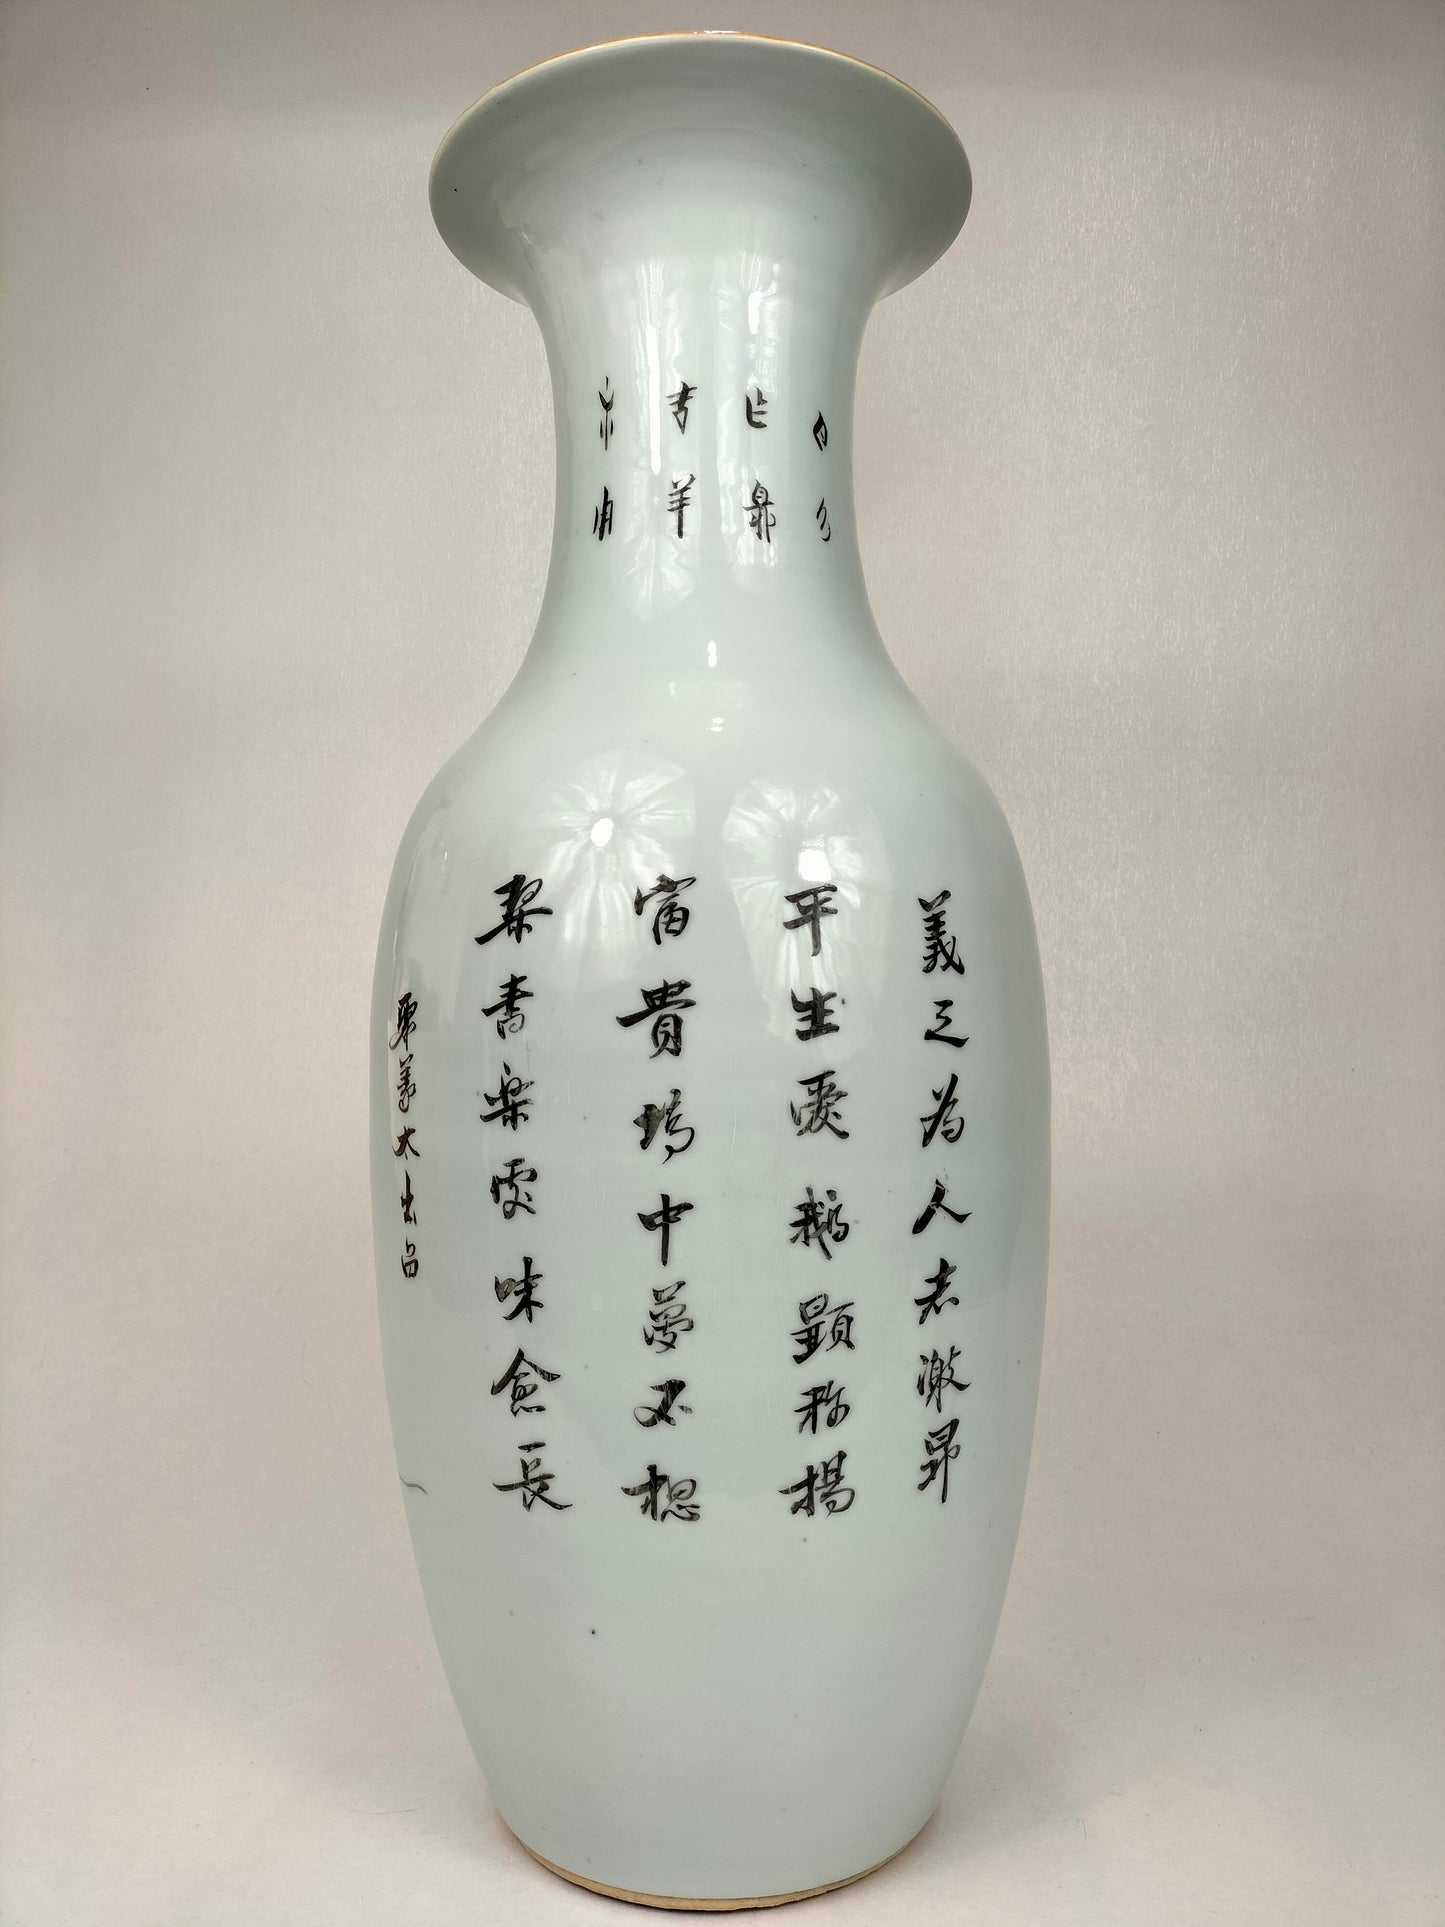 Grand vase chinois ancien à décor de sages et d'enfants // Période République (1912-1949)